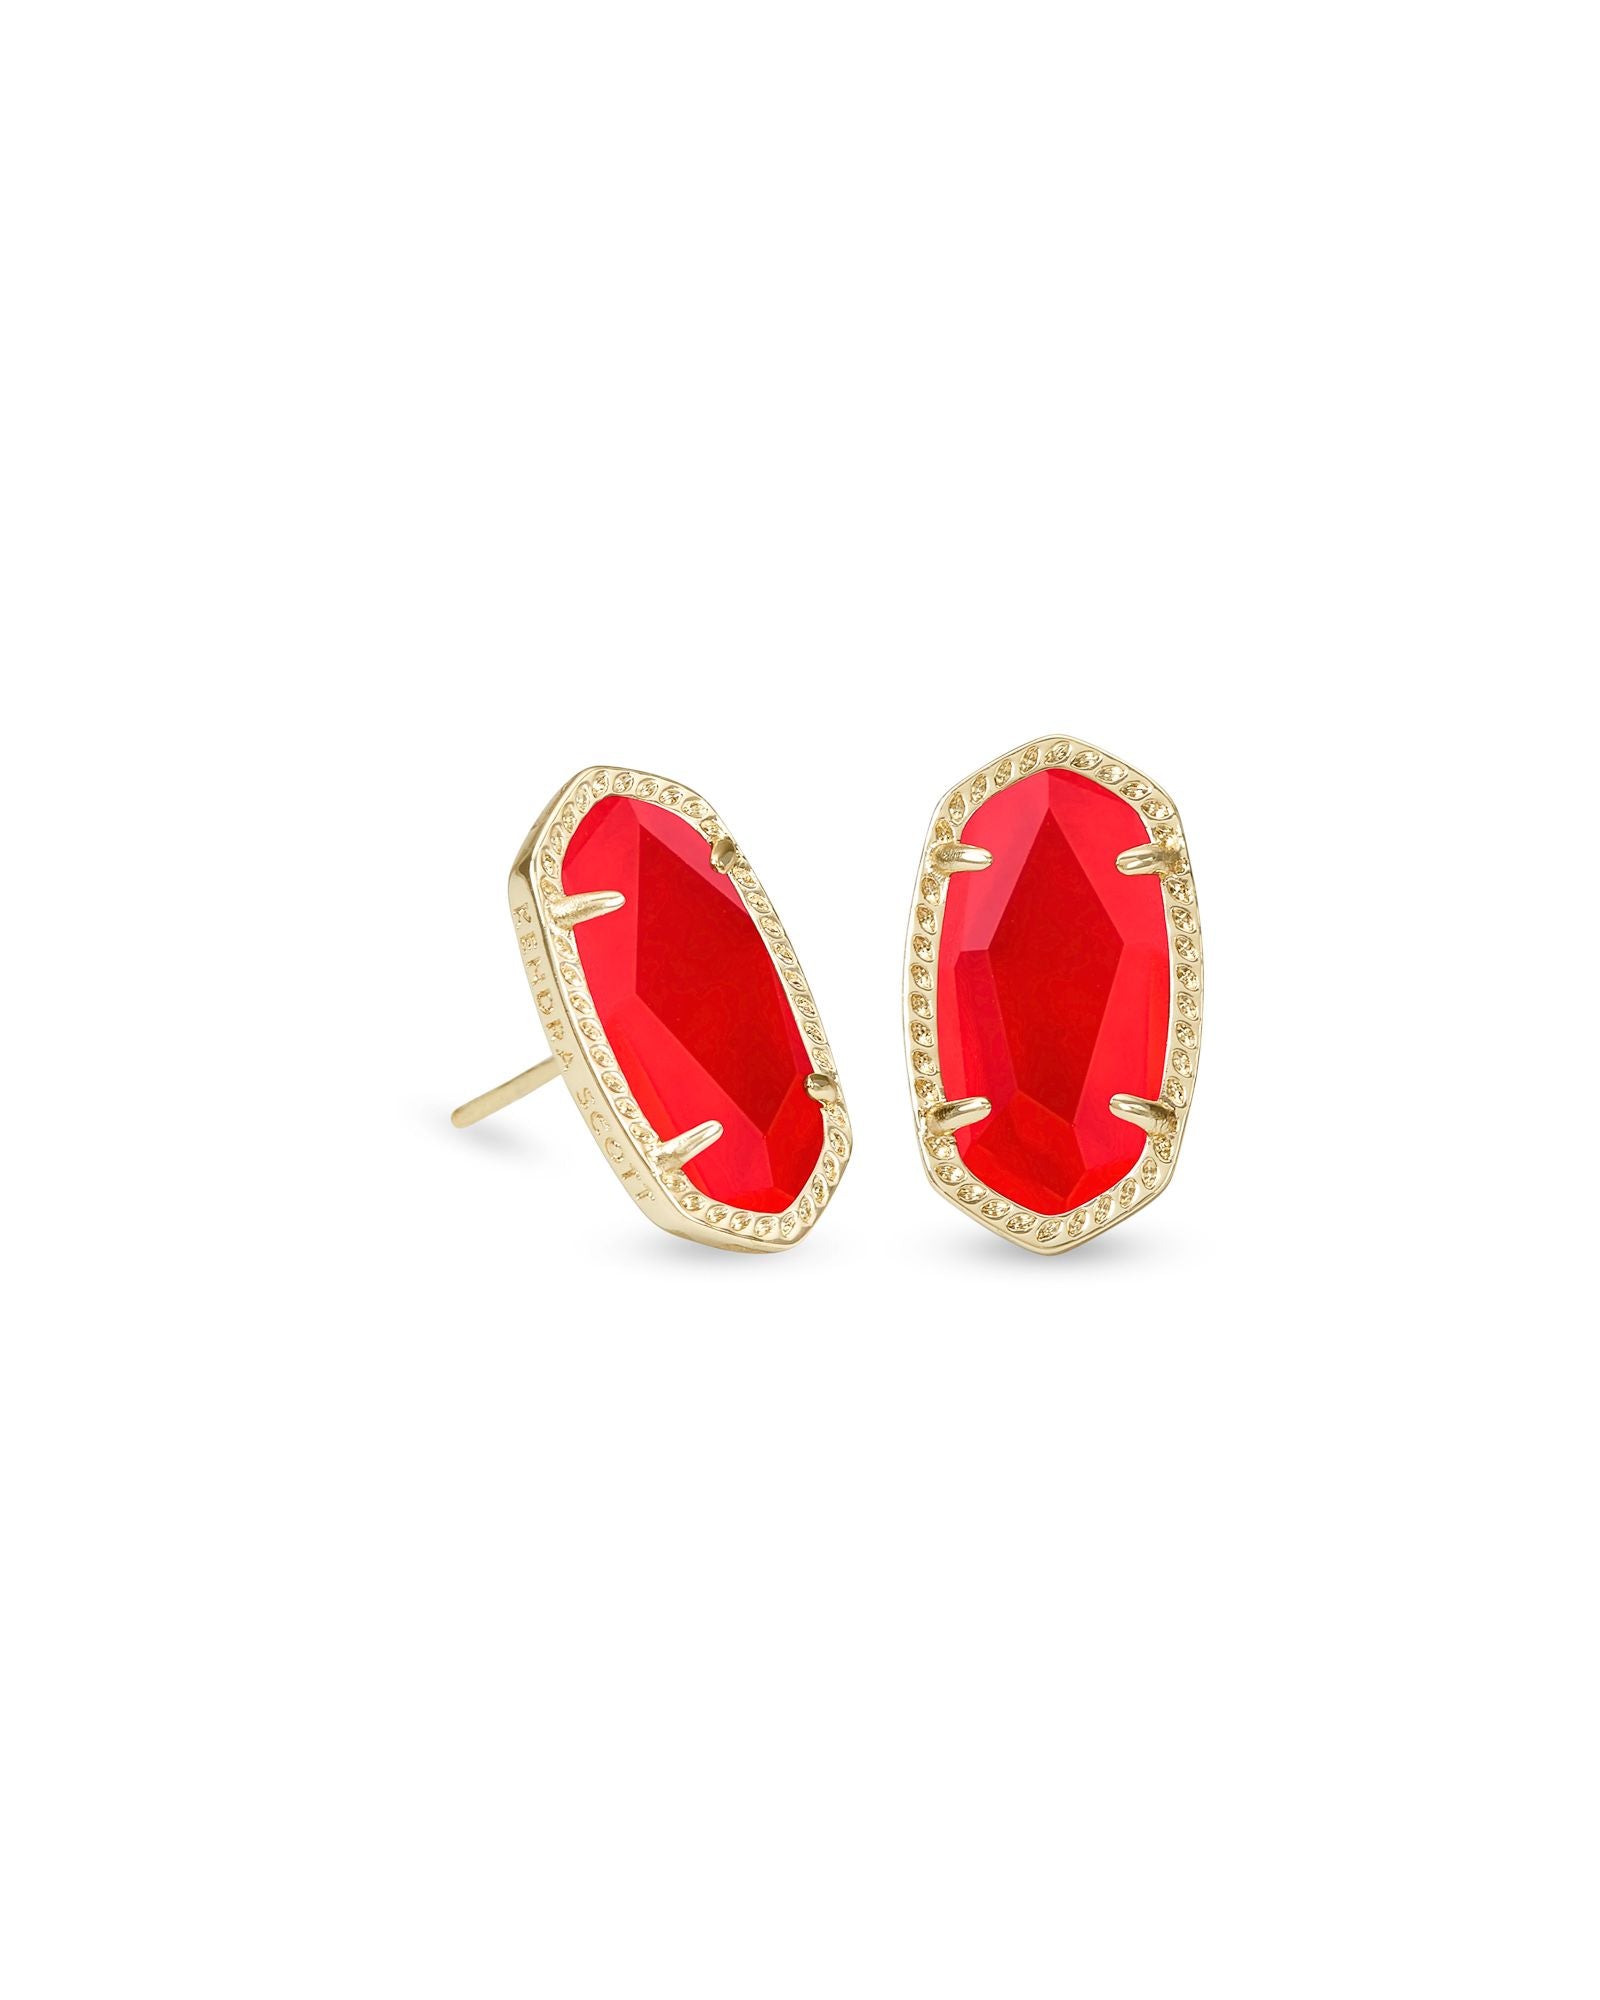 Kendra Scott Ellie Stud Earrings Gold Red Illusion-Earrings-Kendra Scott-E6031GLD-The Twisted Chandelier